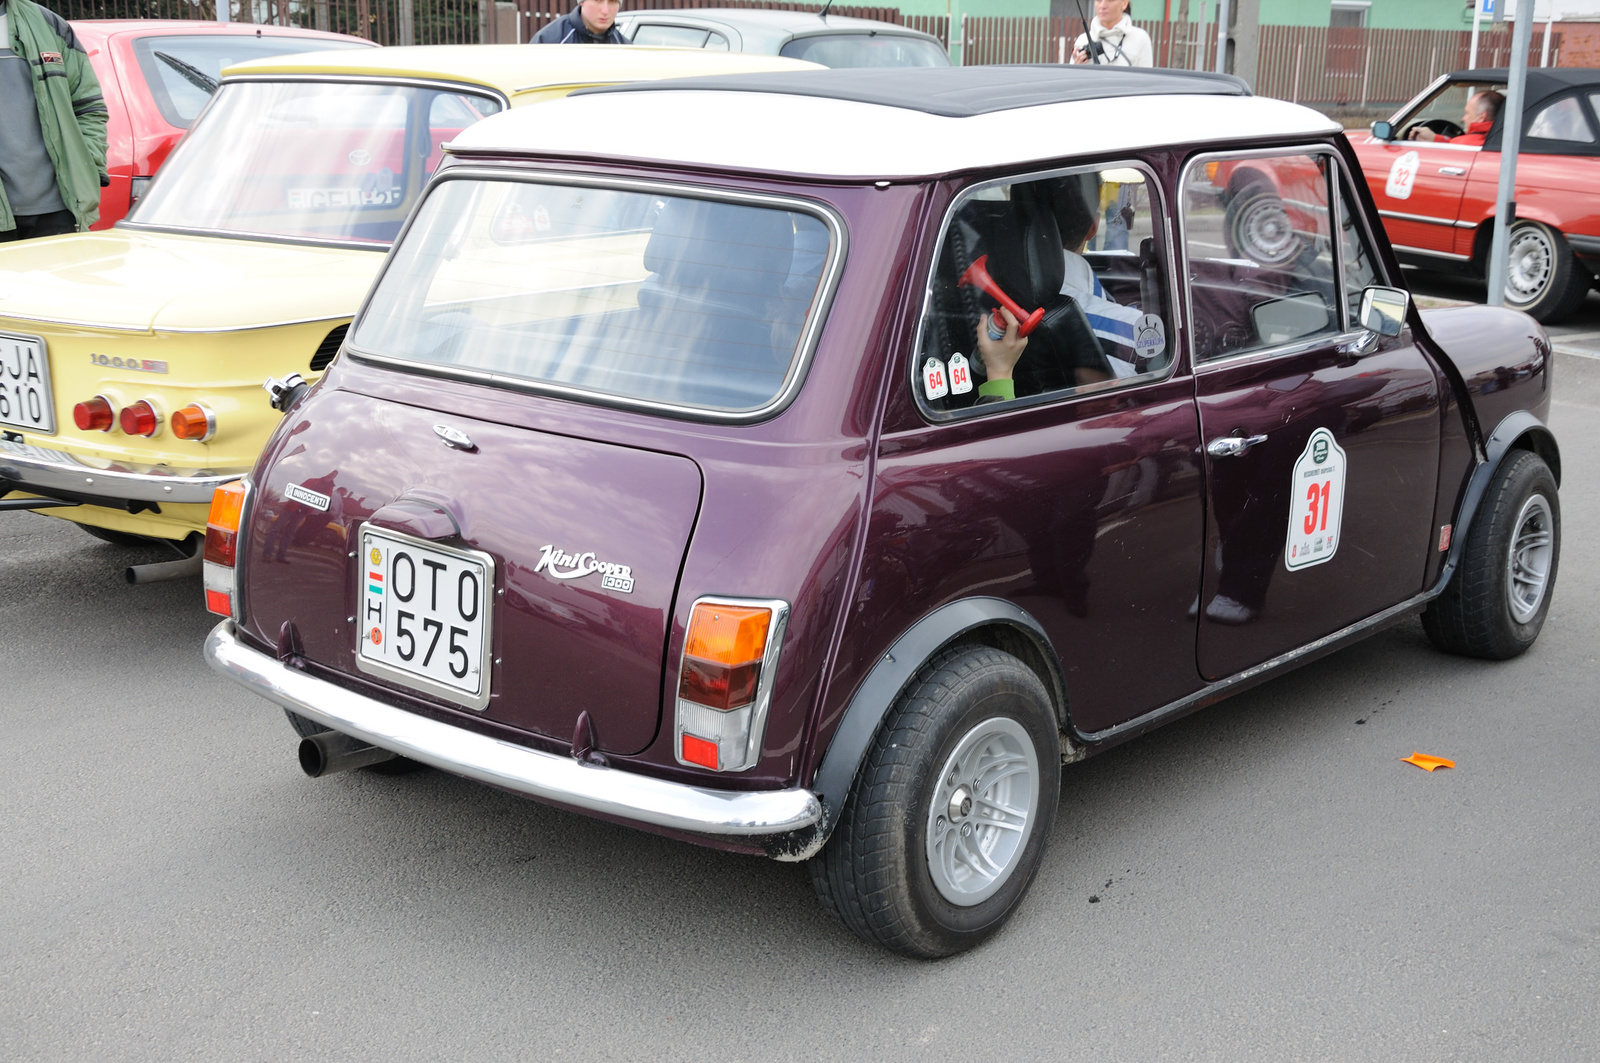 Mini Cooper 1300